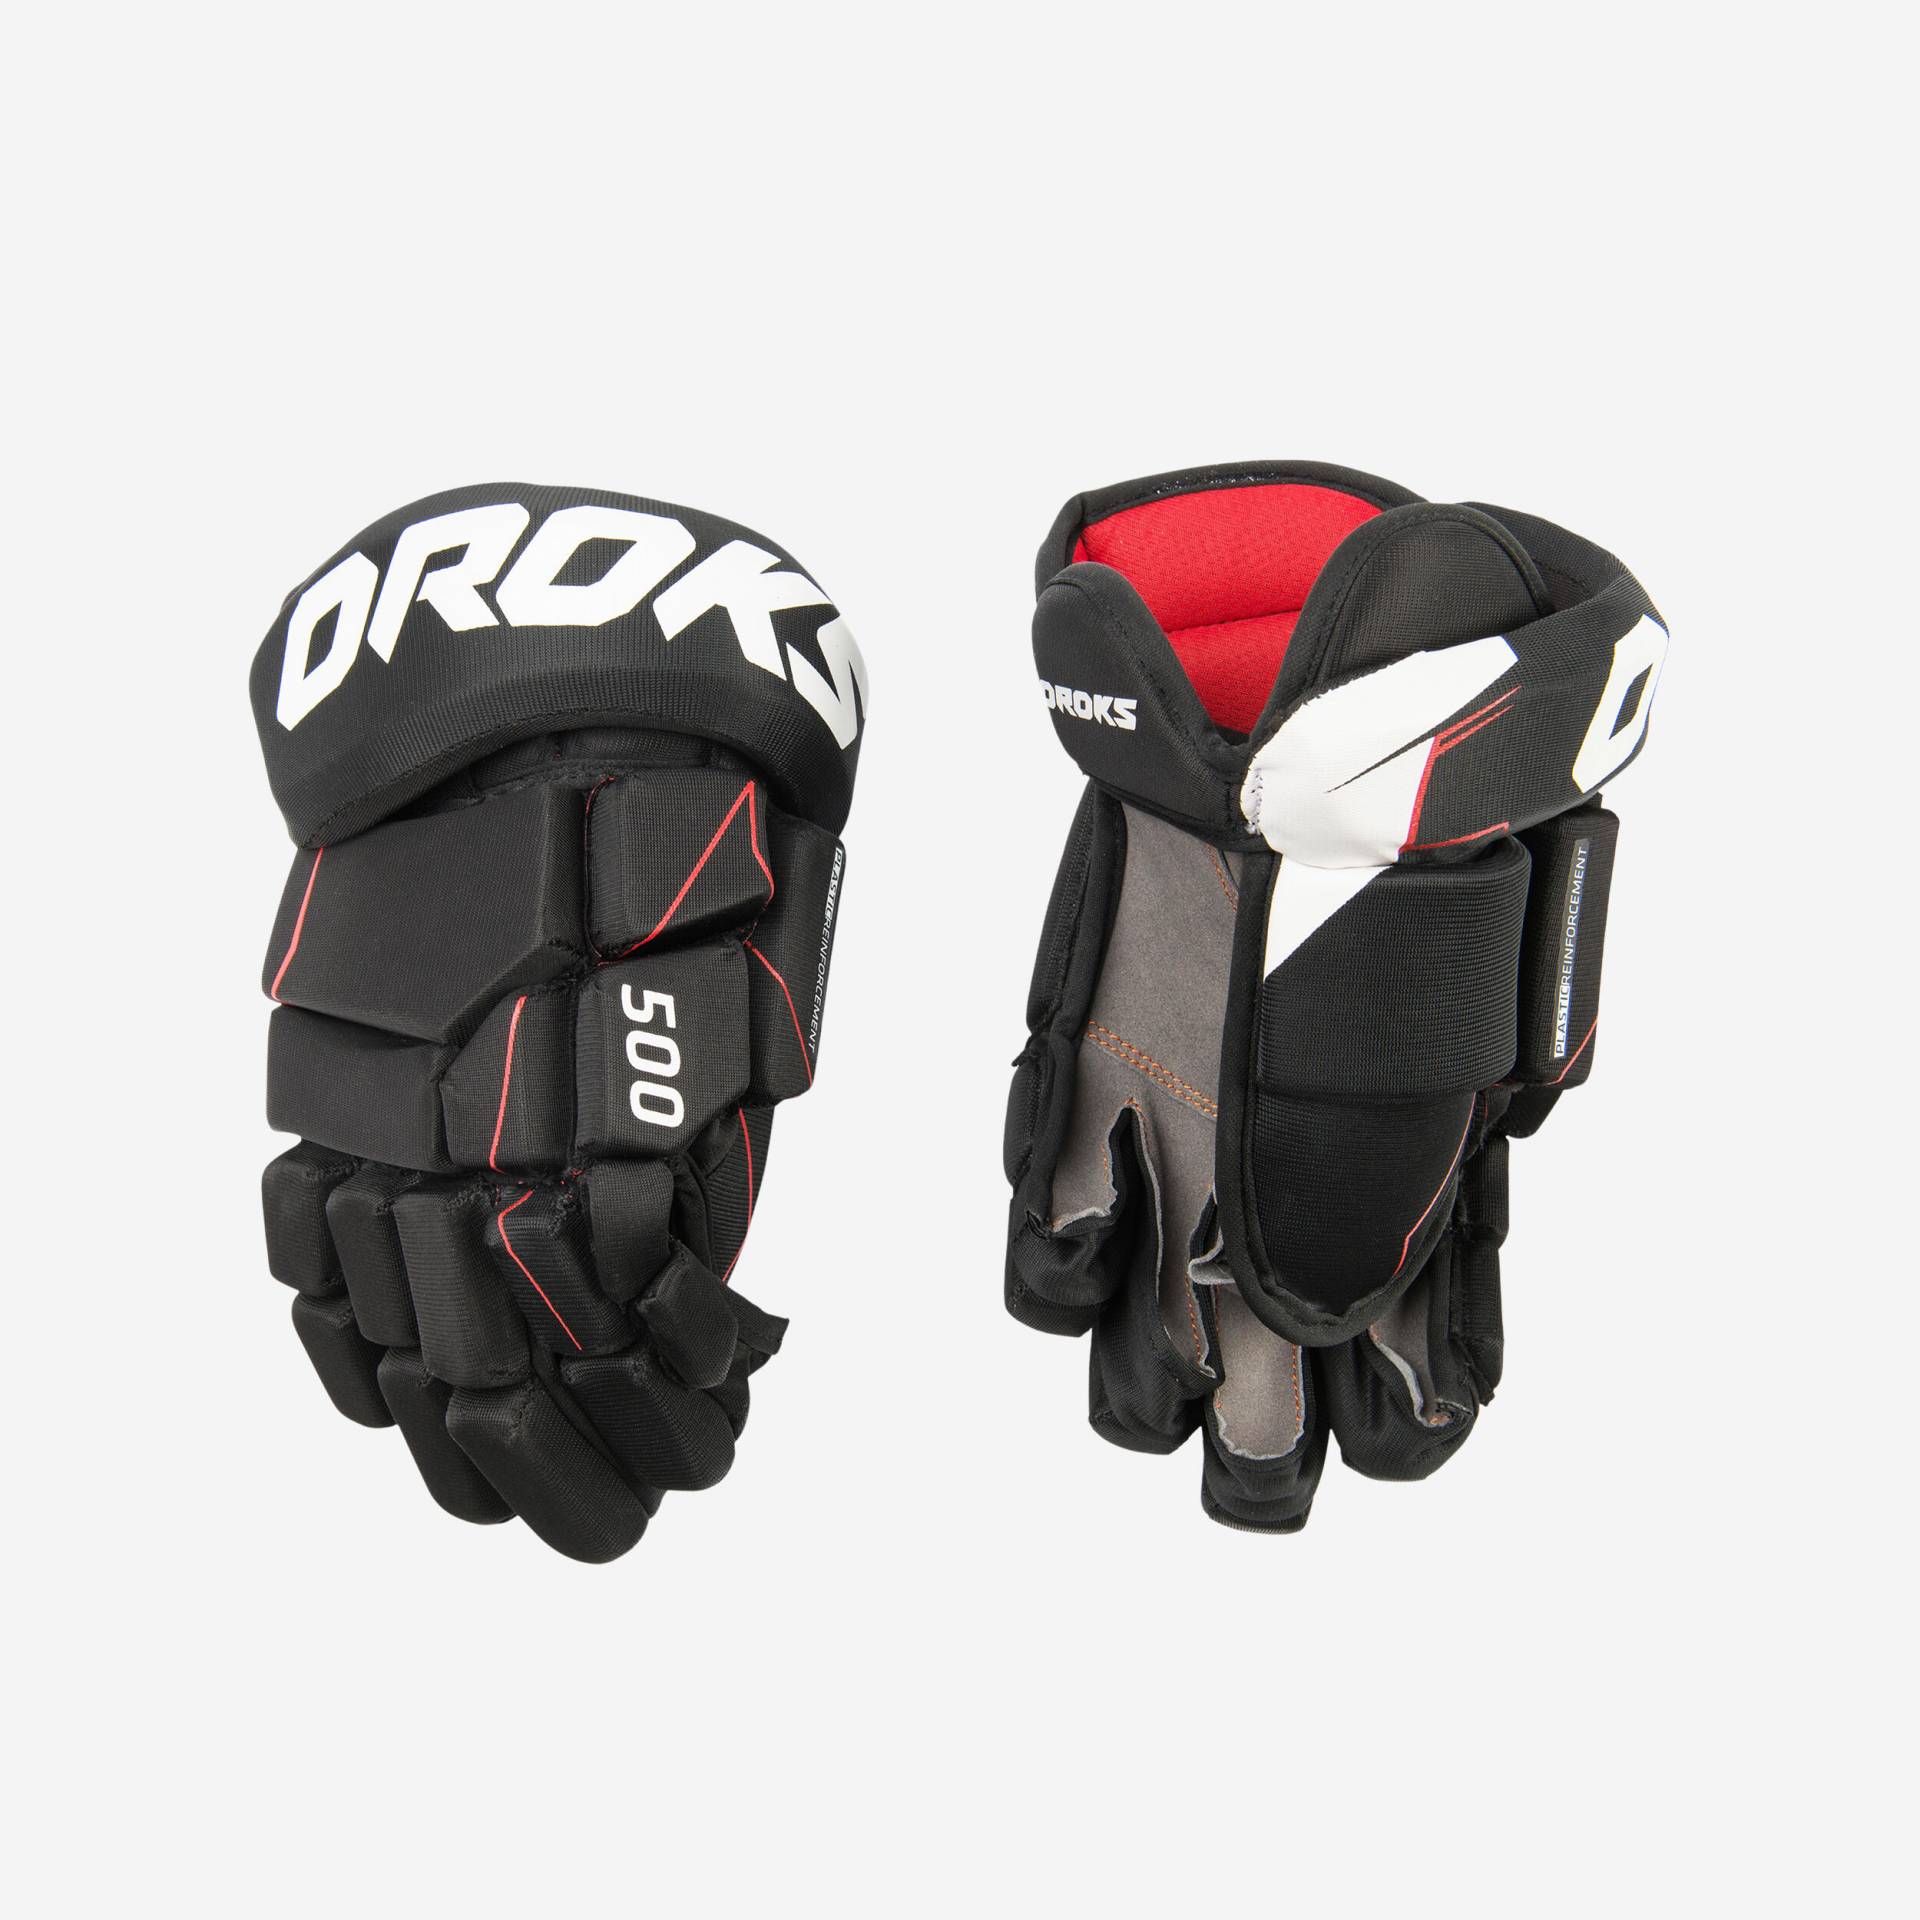 Eishockey-Handschuhe IH 500 JR von OROKS